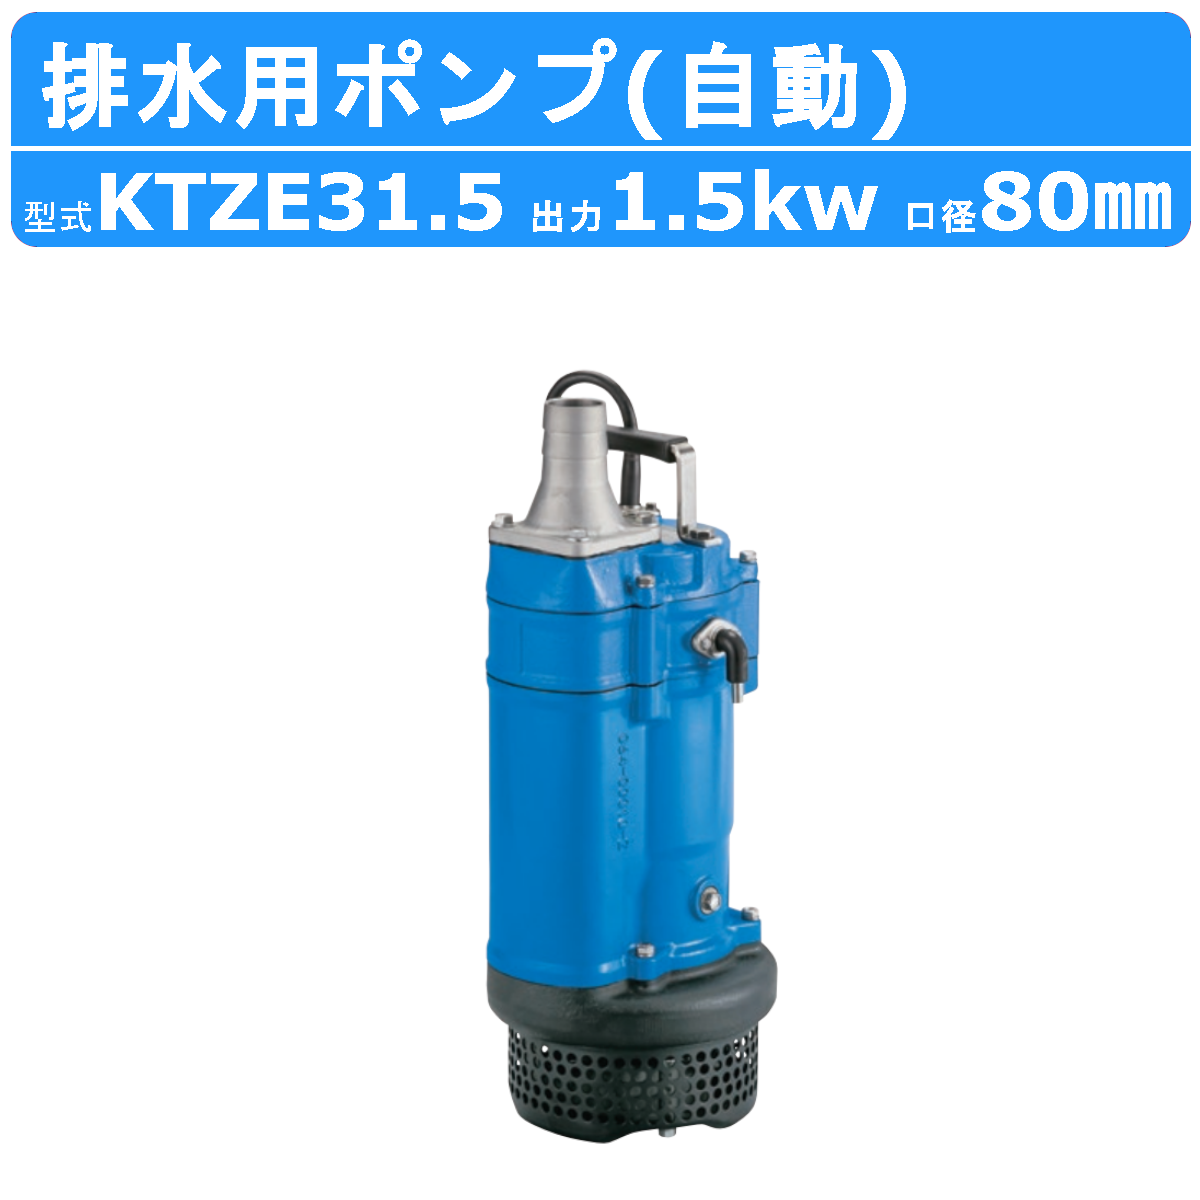 ツルミ 水中ポンプ KTZE31.5 自動形 80mm 50Hz/60Hz 三相200V 一般工事排水ポンプ 排水ポンプ 排水 排水用 排水用ポンプ